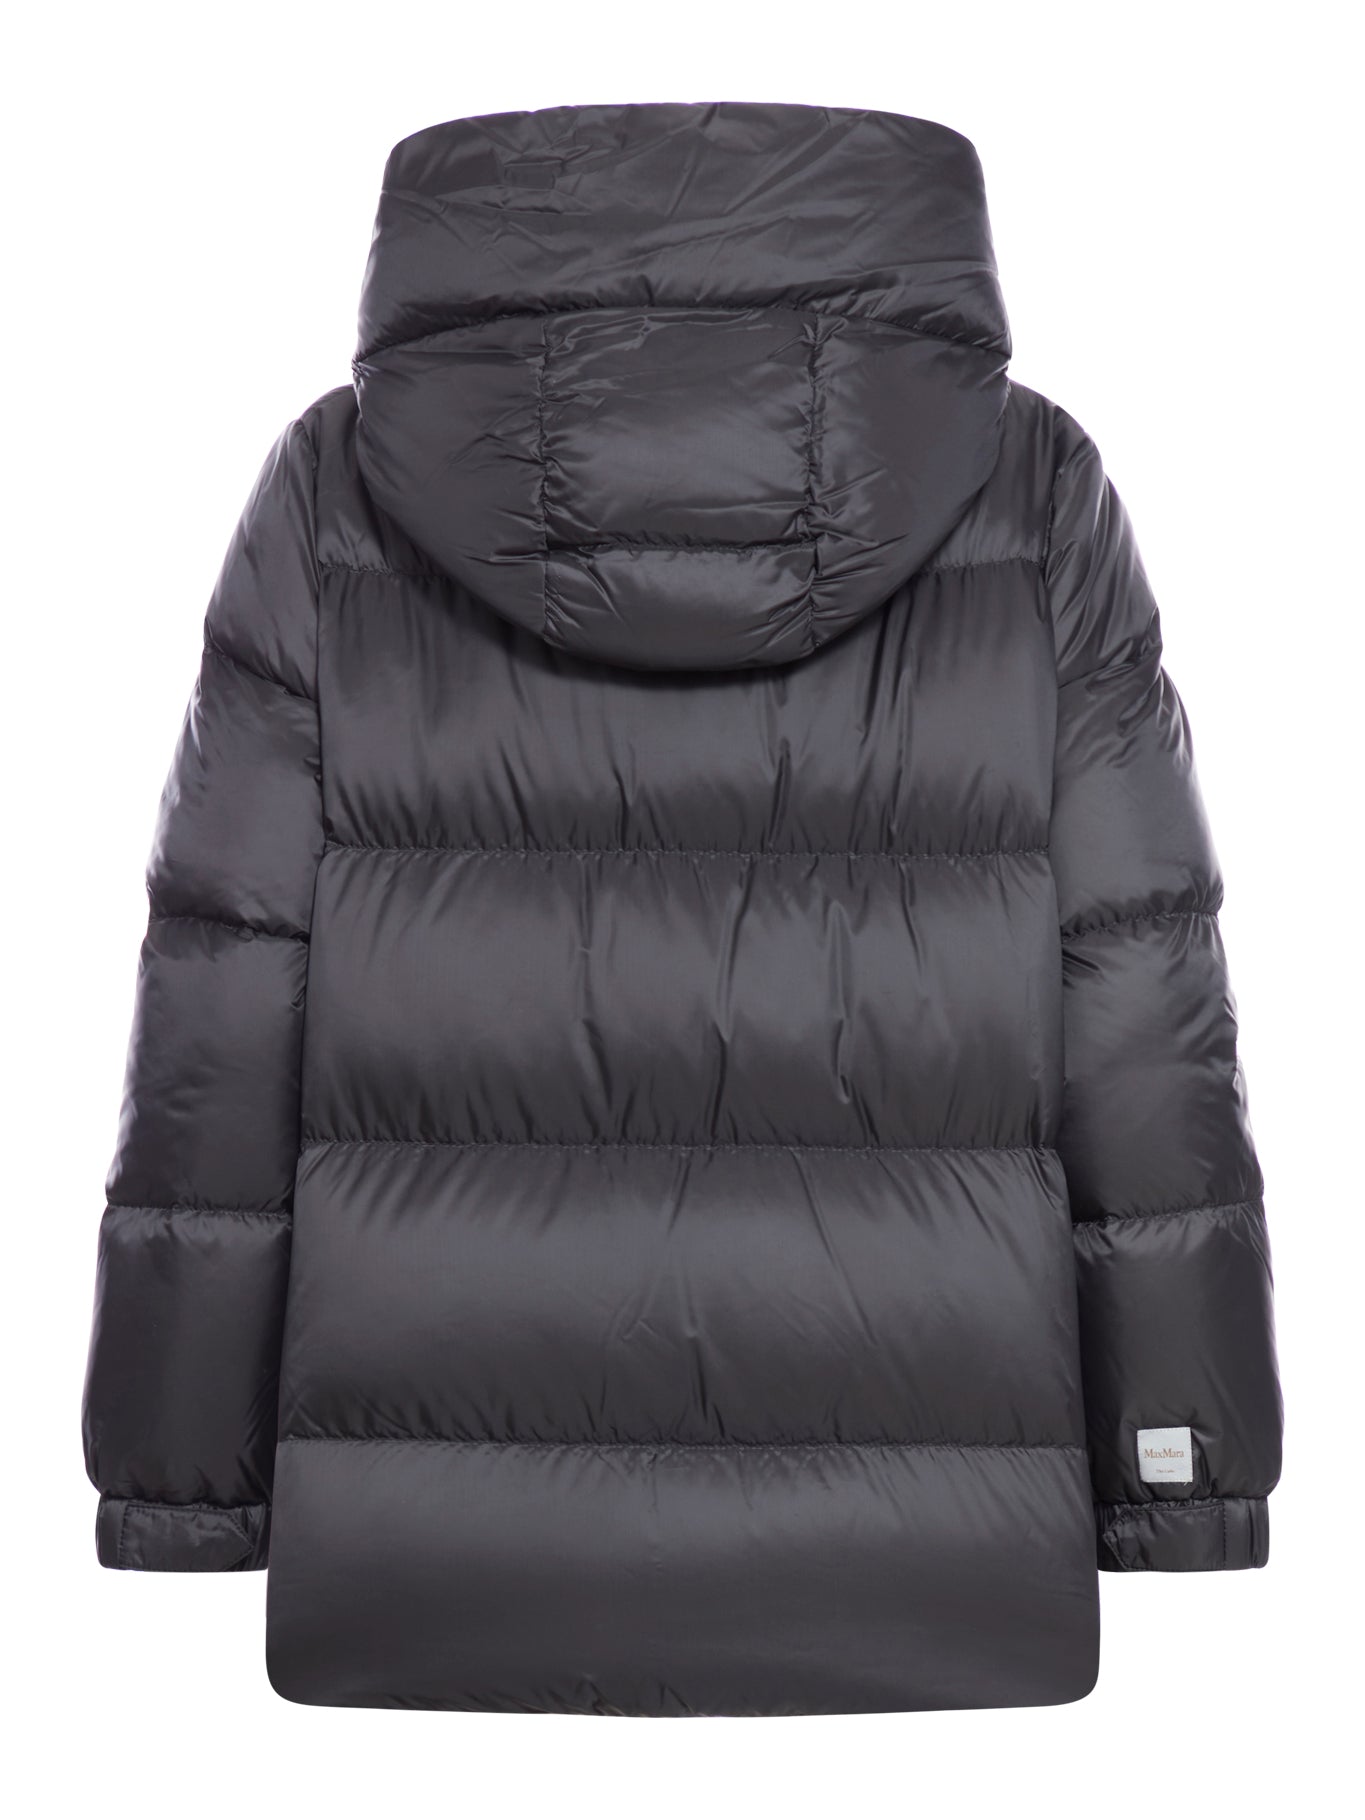 Seia waterproof down jacket with hood and zip